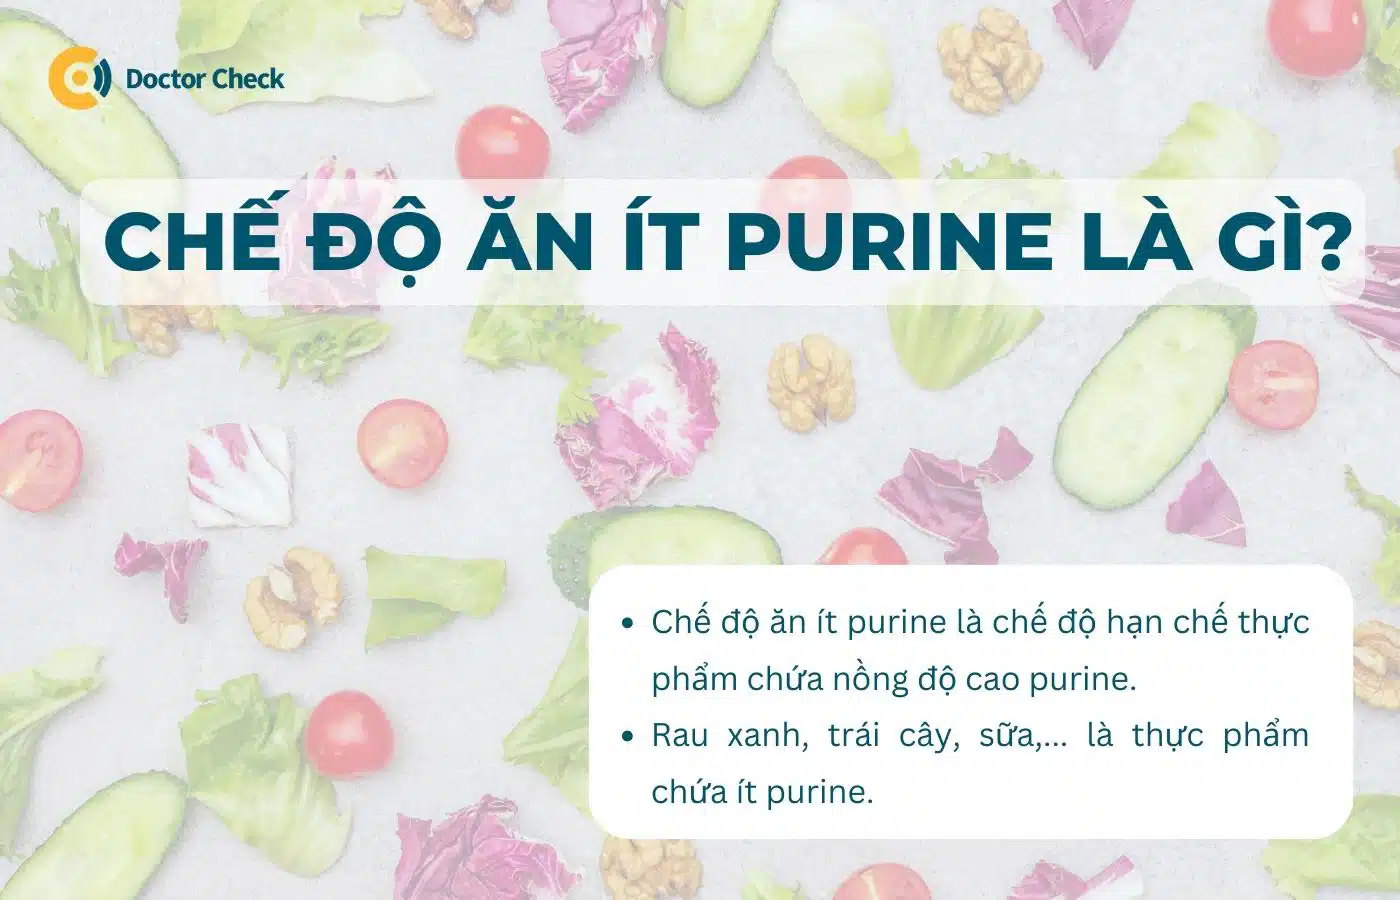 Chế độ ăn ít purine là gì?